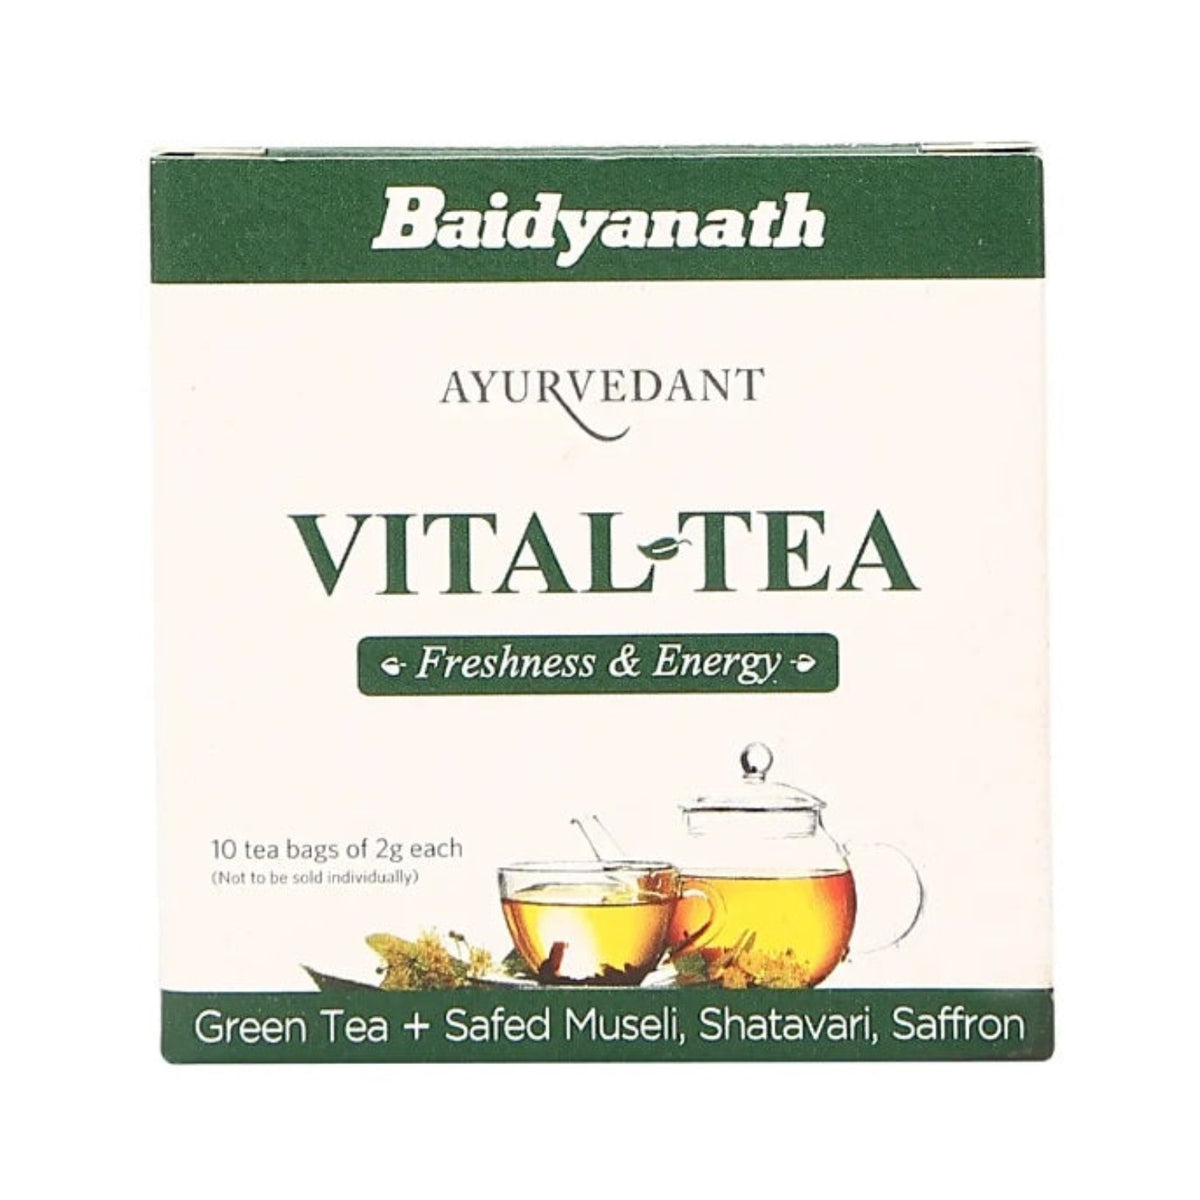 Baidyanath Ayurvedischer Jhansi Vital-Tee, 10 Teebeutel, 2 g